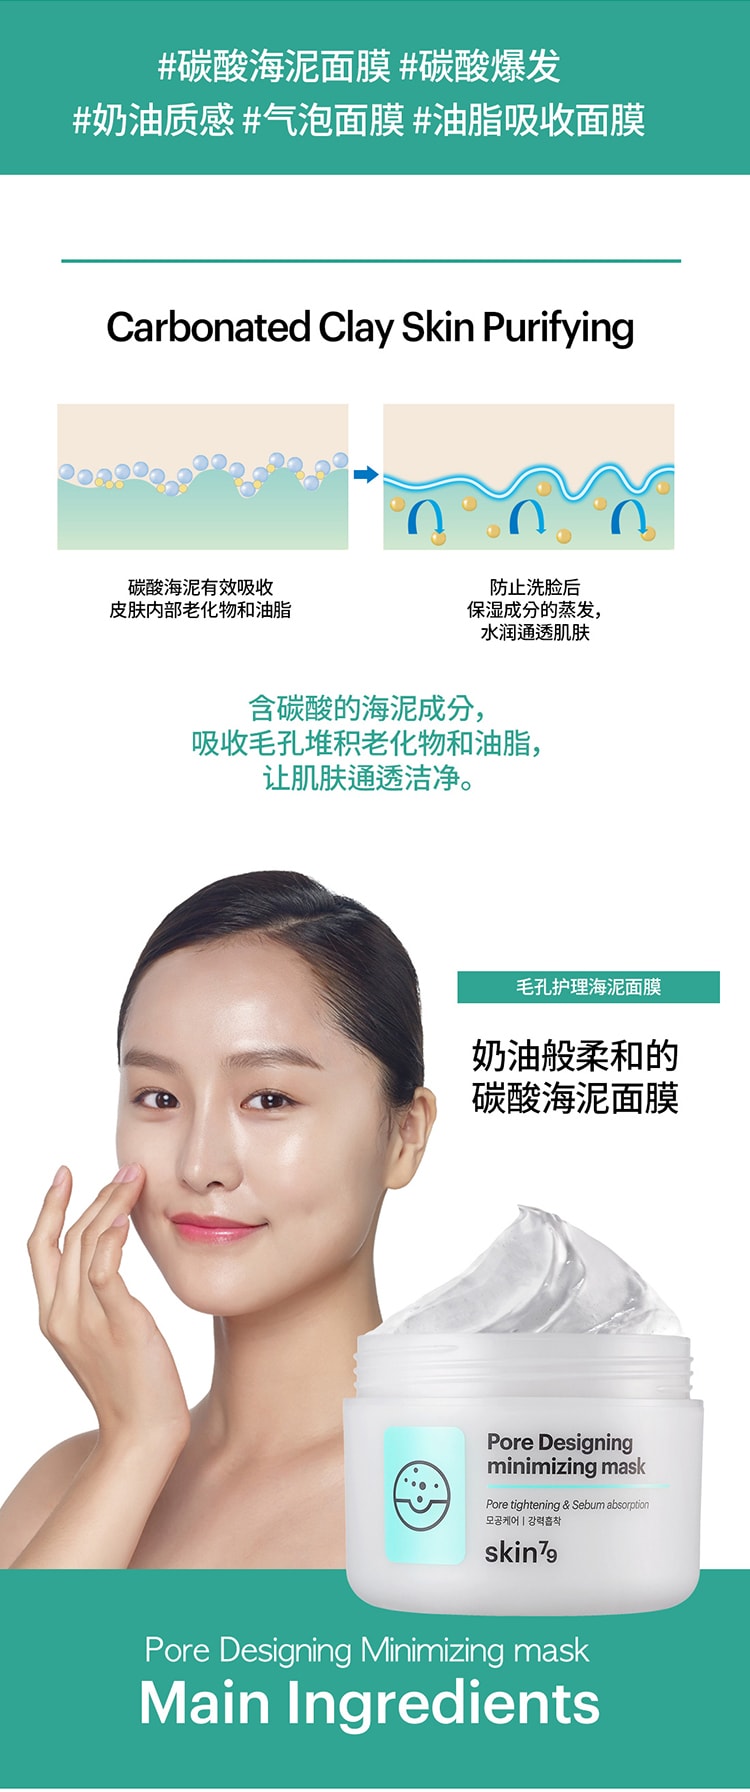 韓國 Skin79 Pore Designing minimizing mask 100ml